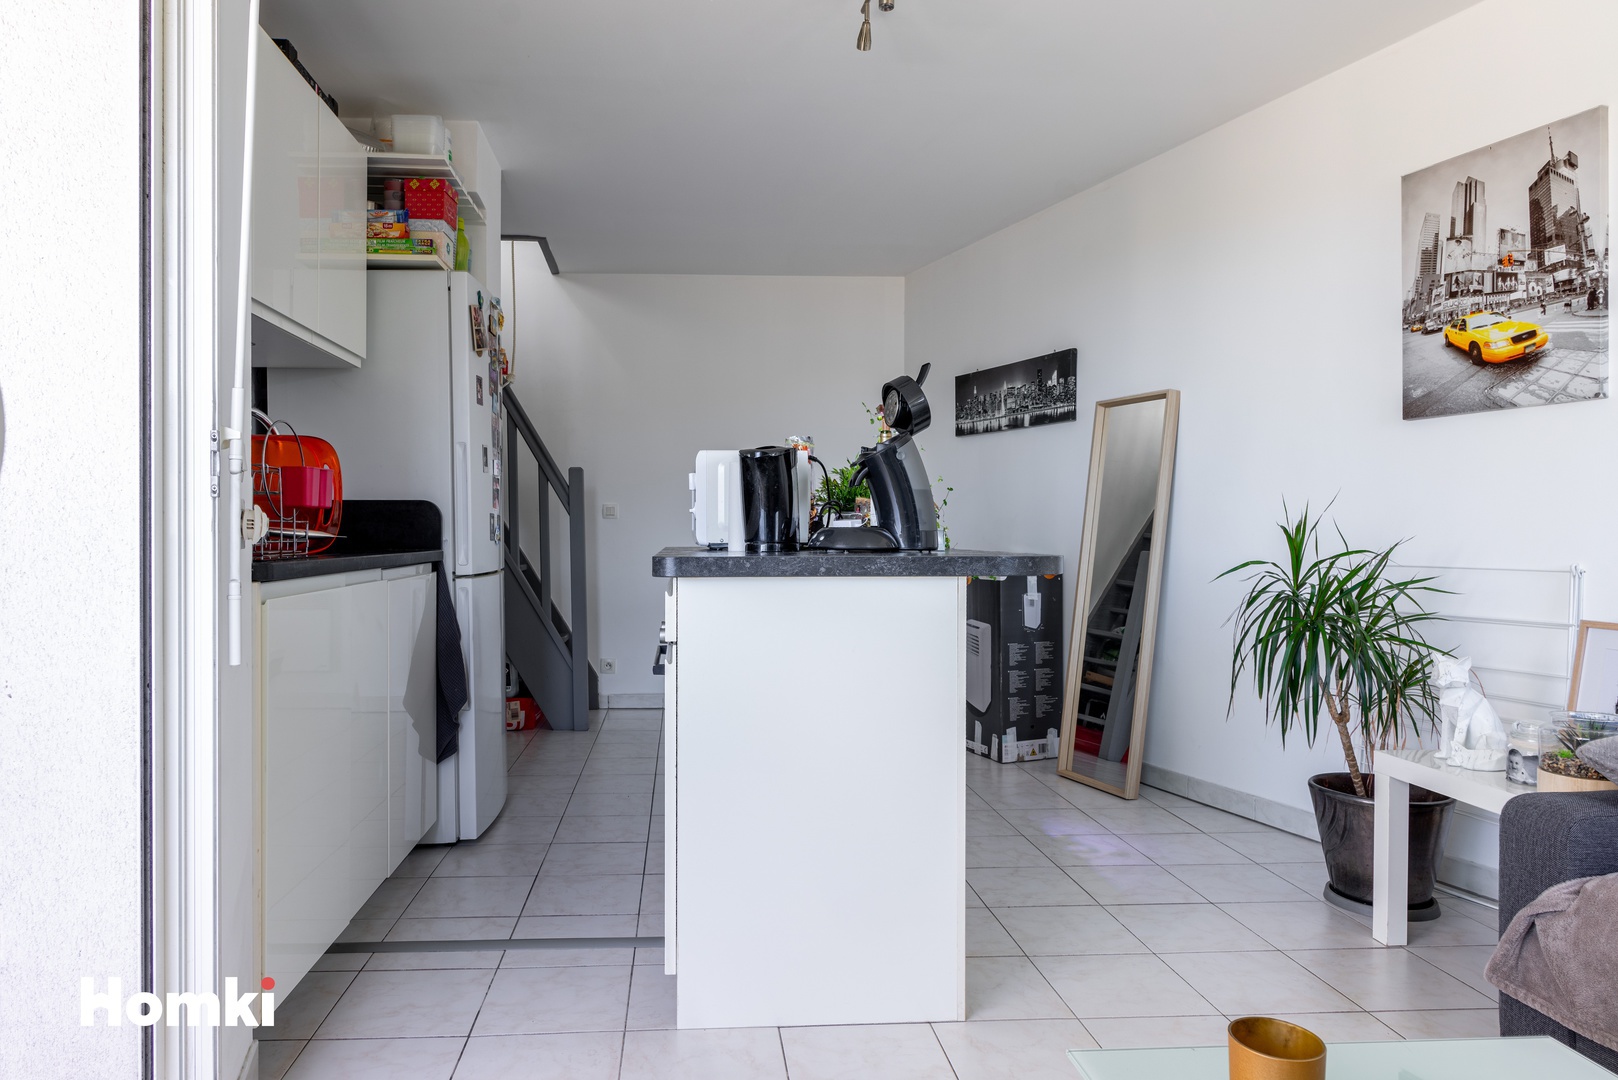 Homki - Vente Appartement  de 30.0 m² à Marseille 13008